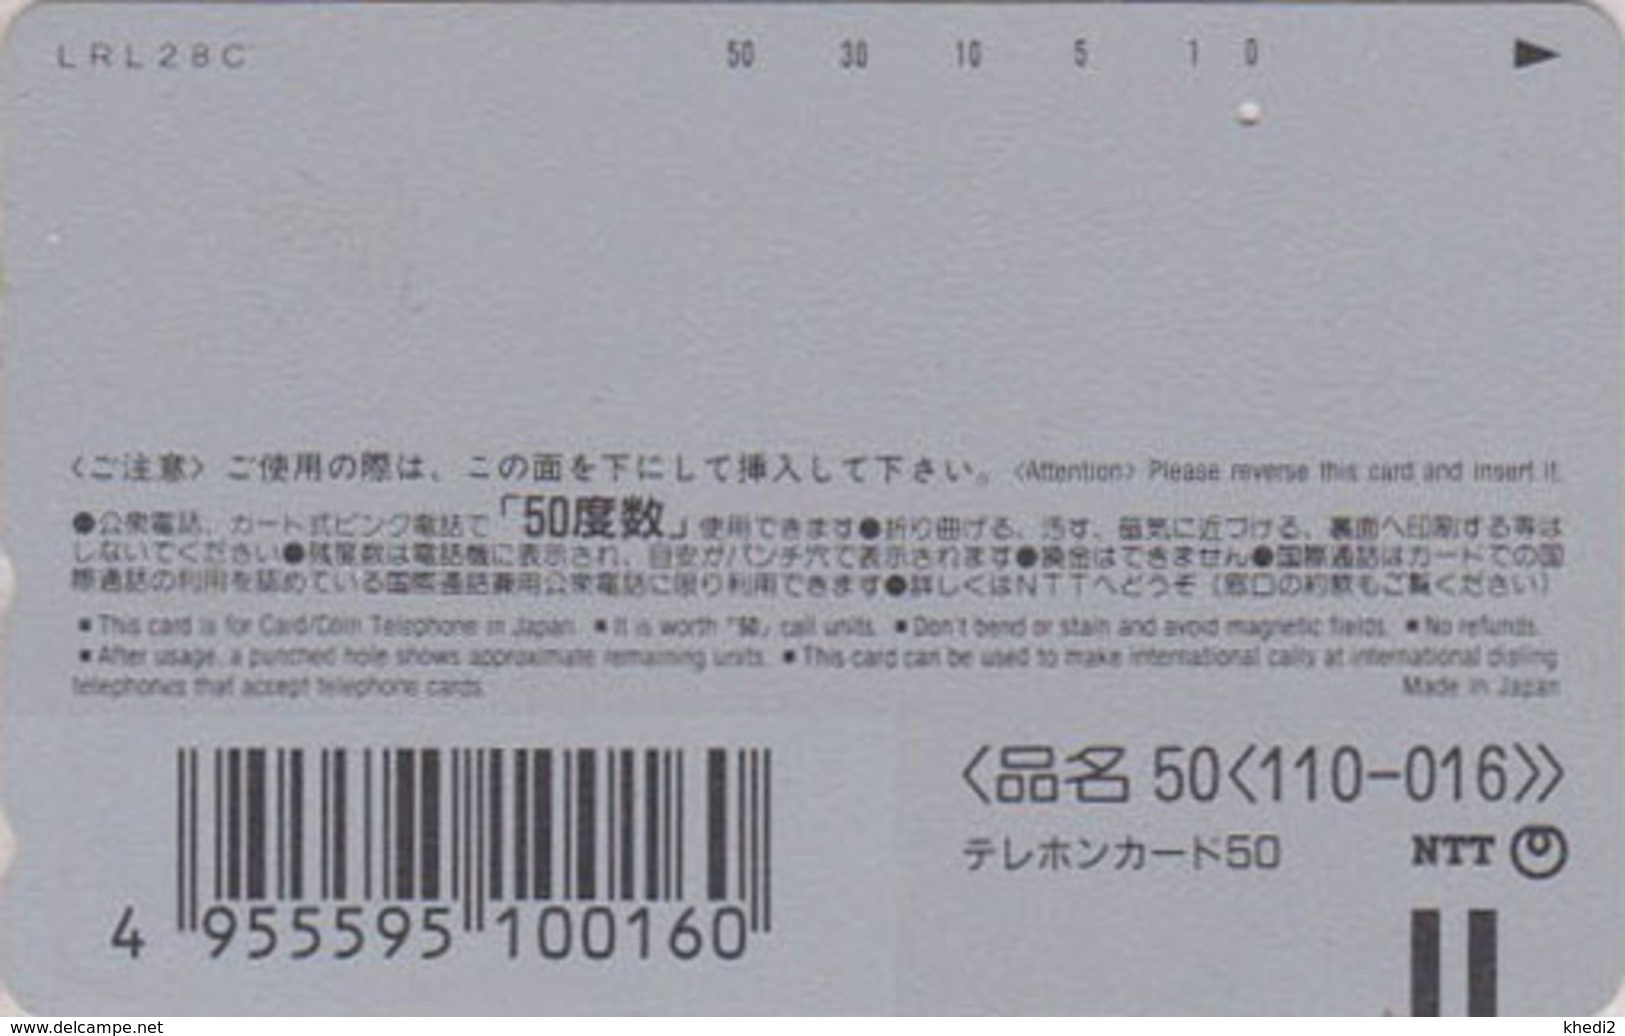 Télécarte Japon / 110-016 ** ONE PUNCH ** - Série DISNEY FAN - Chien Pluto Dog - Japan Phonecard - Disney